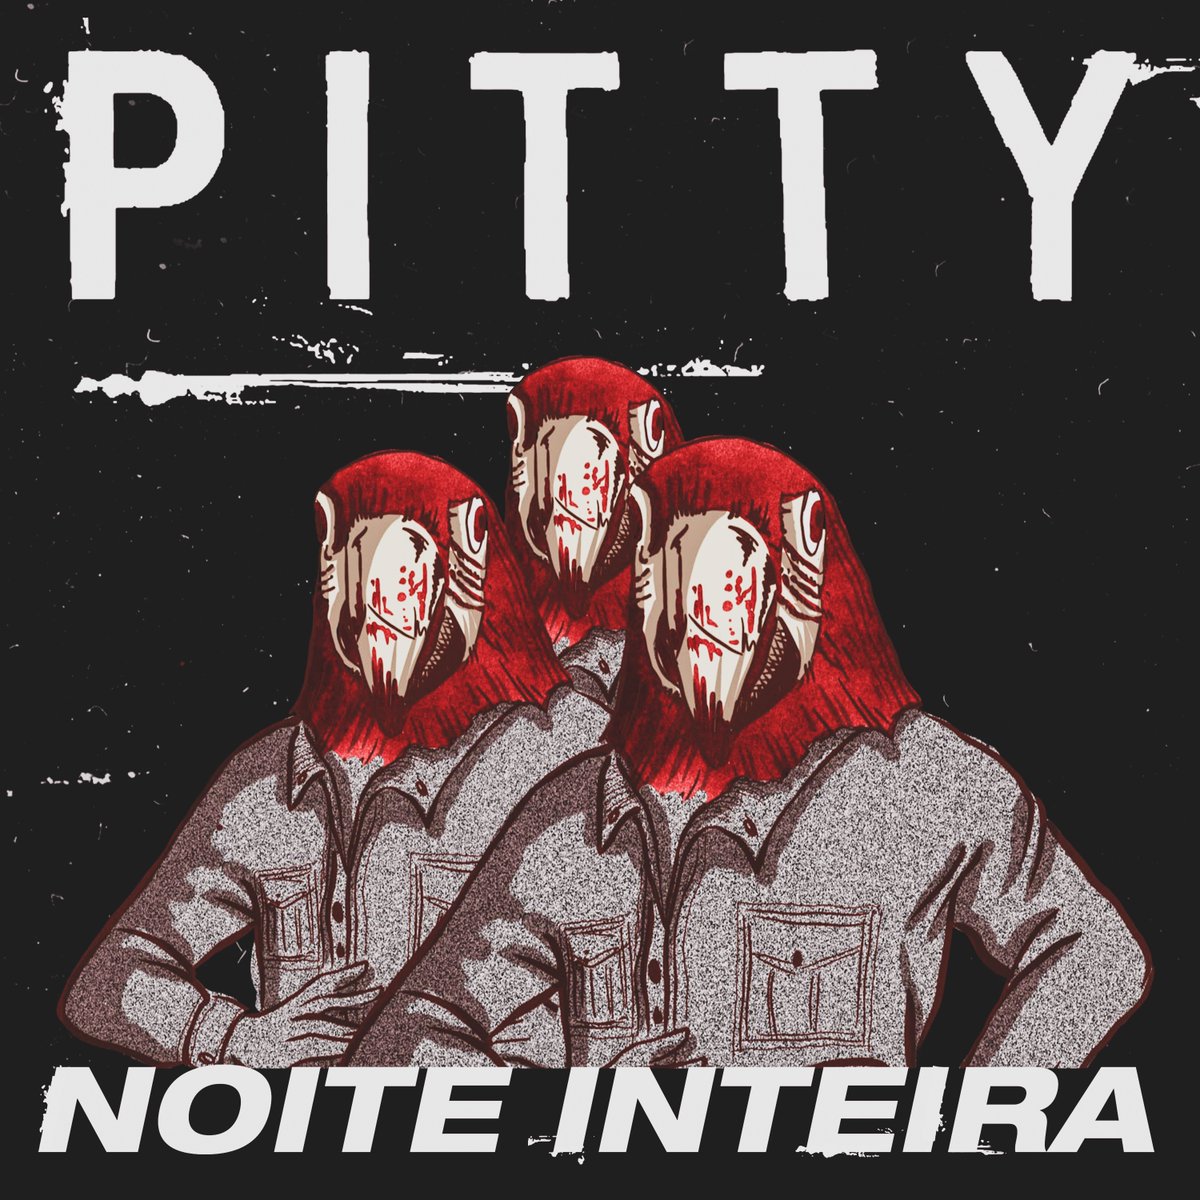 Pitty lança novo single ‘Noite inteira’; ouça